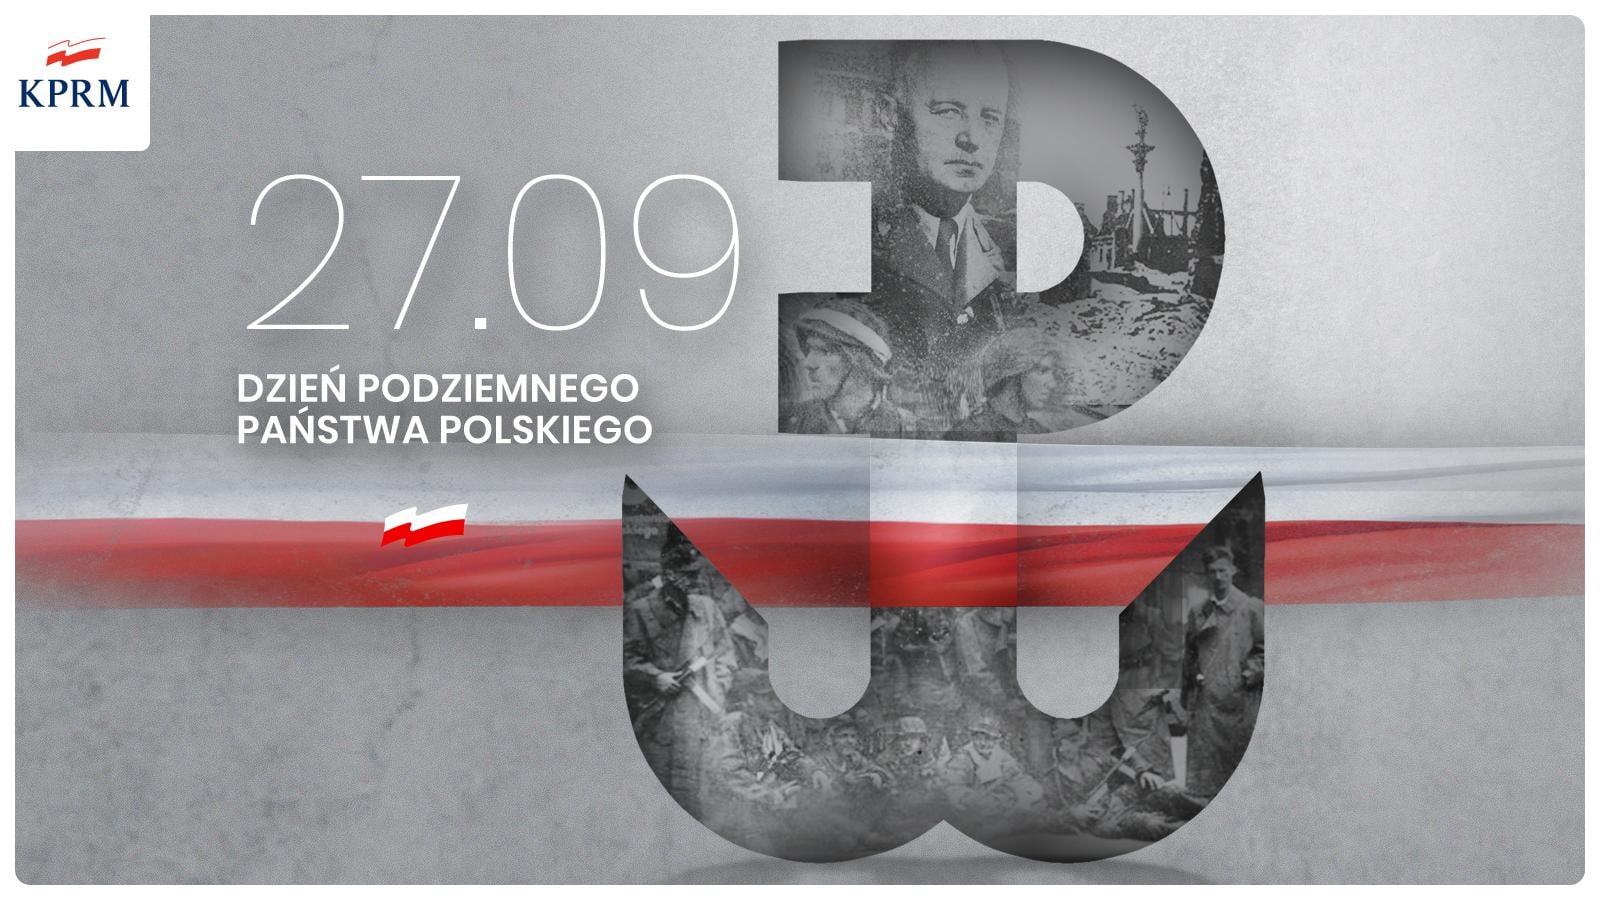 82 lata temu, 27 września 1939 r., powstała Służba Zwycięstwu Polski – zaczątek Polskiego Państwa Podziemnego.